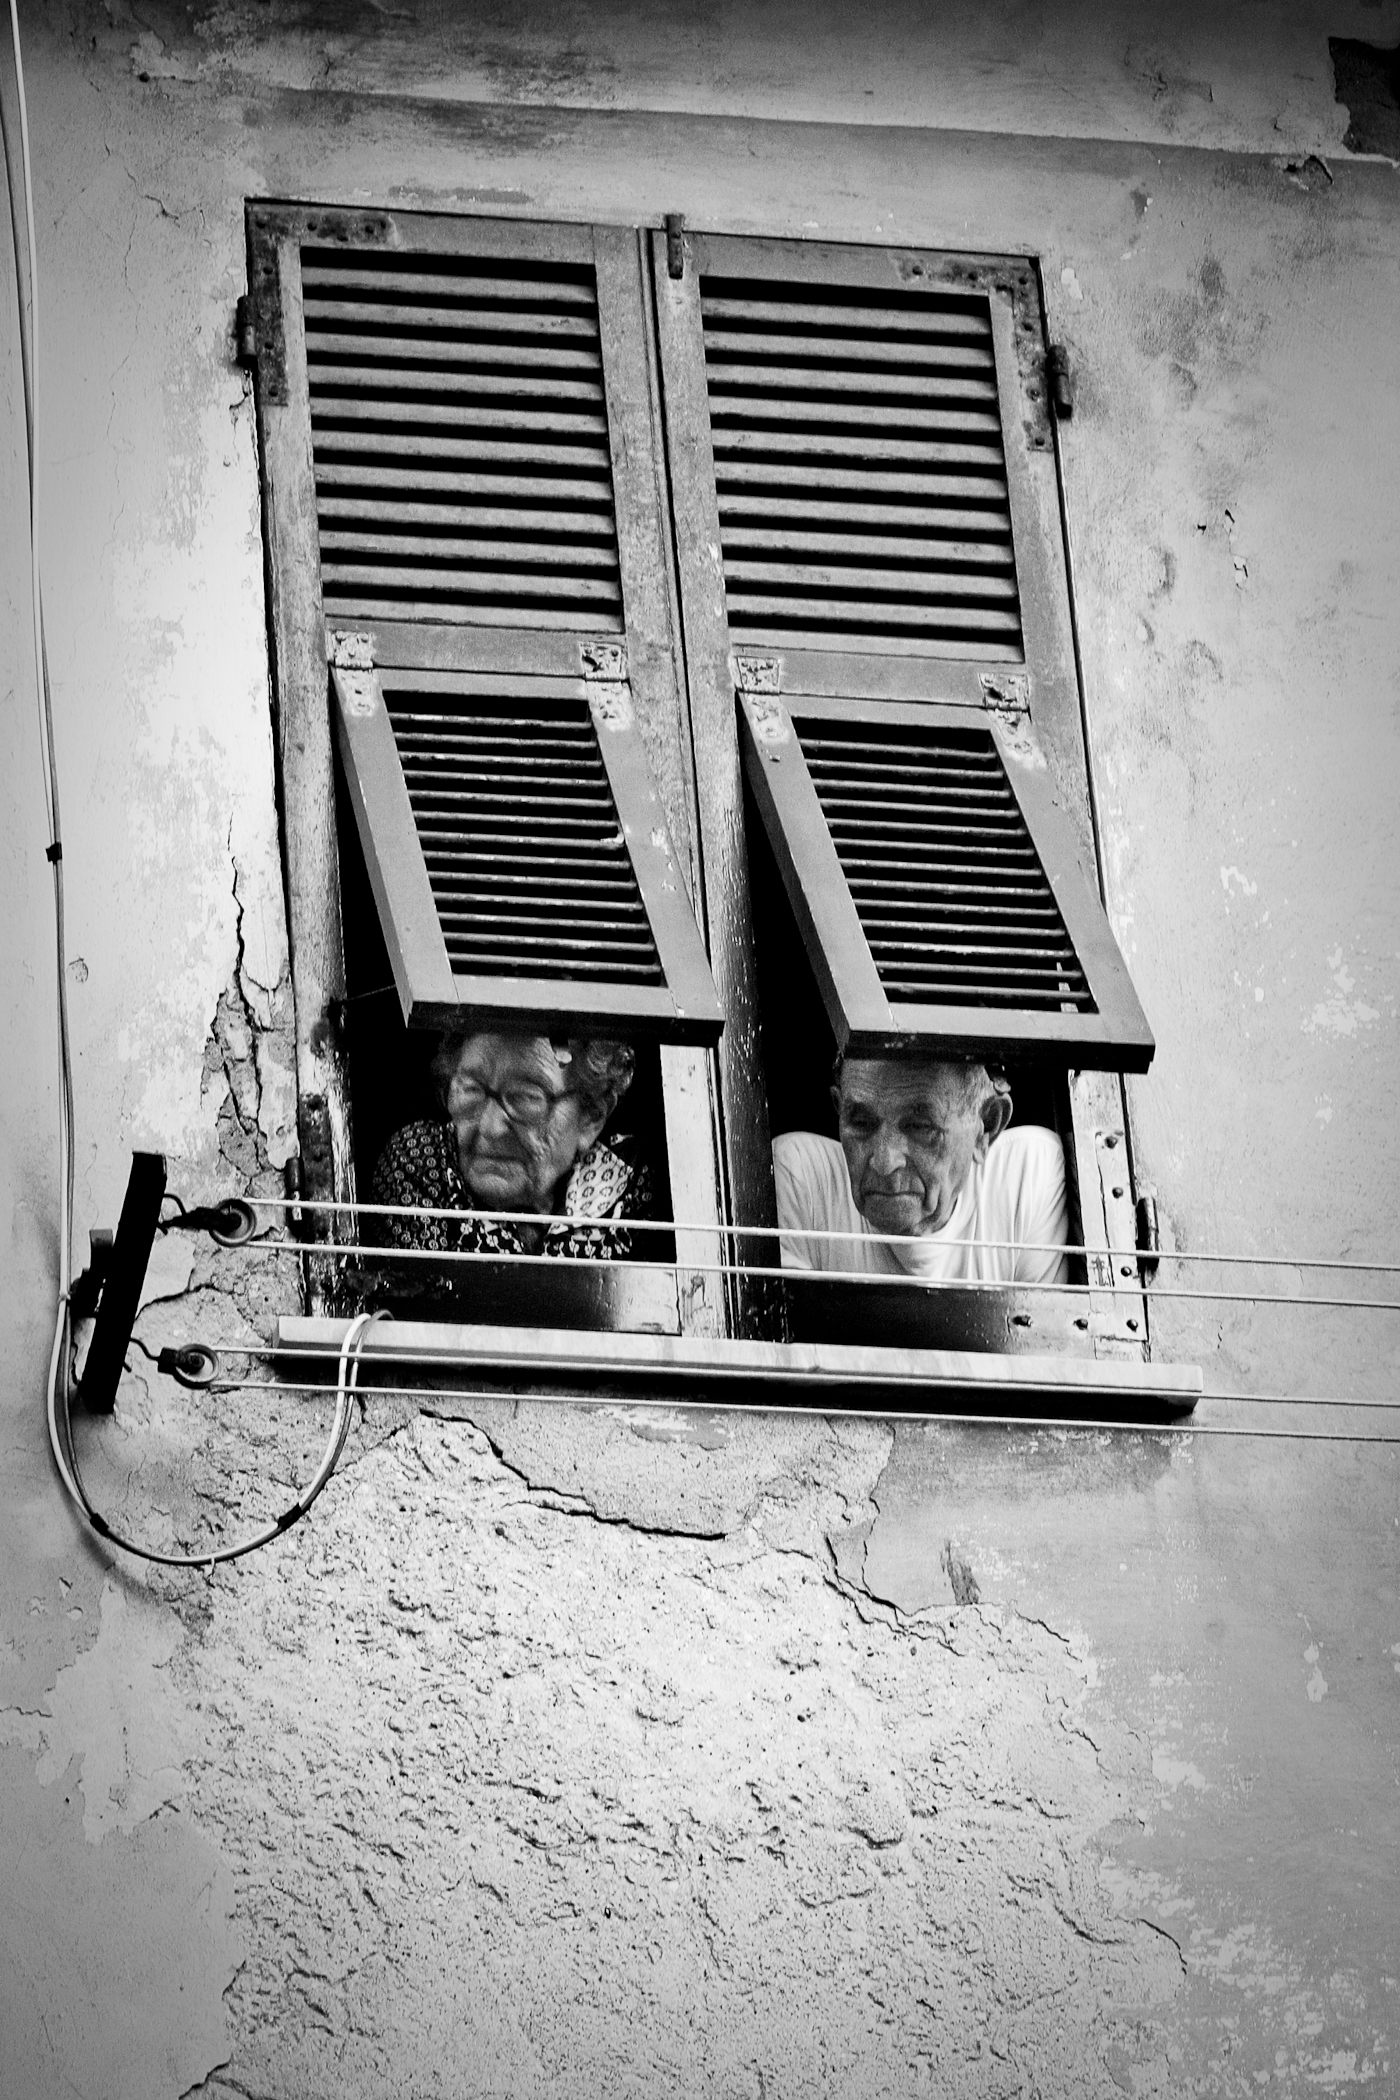  Cinque Terre, Italy 2005. 